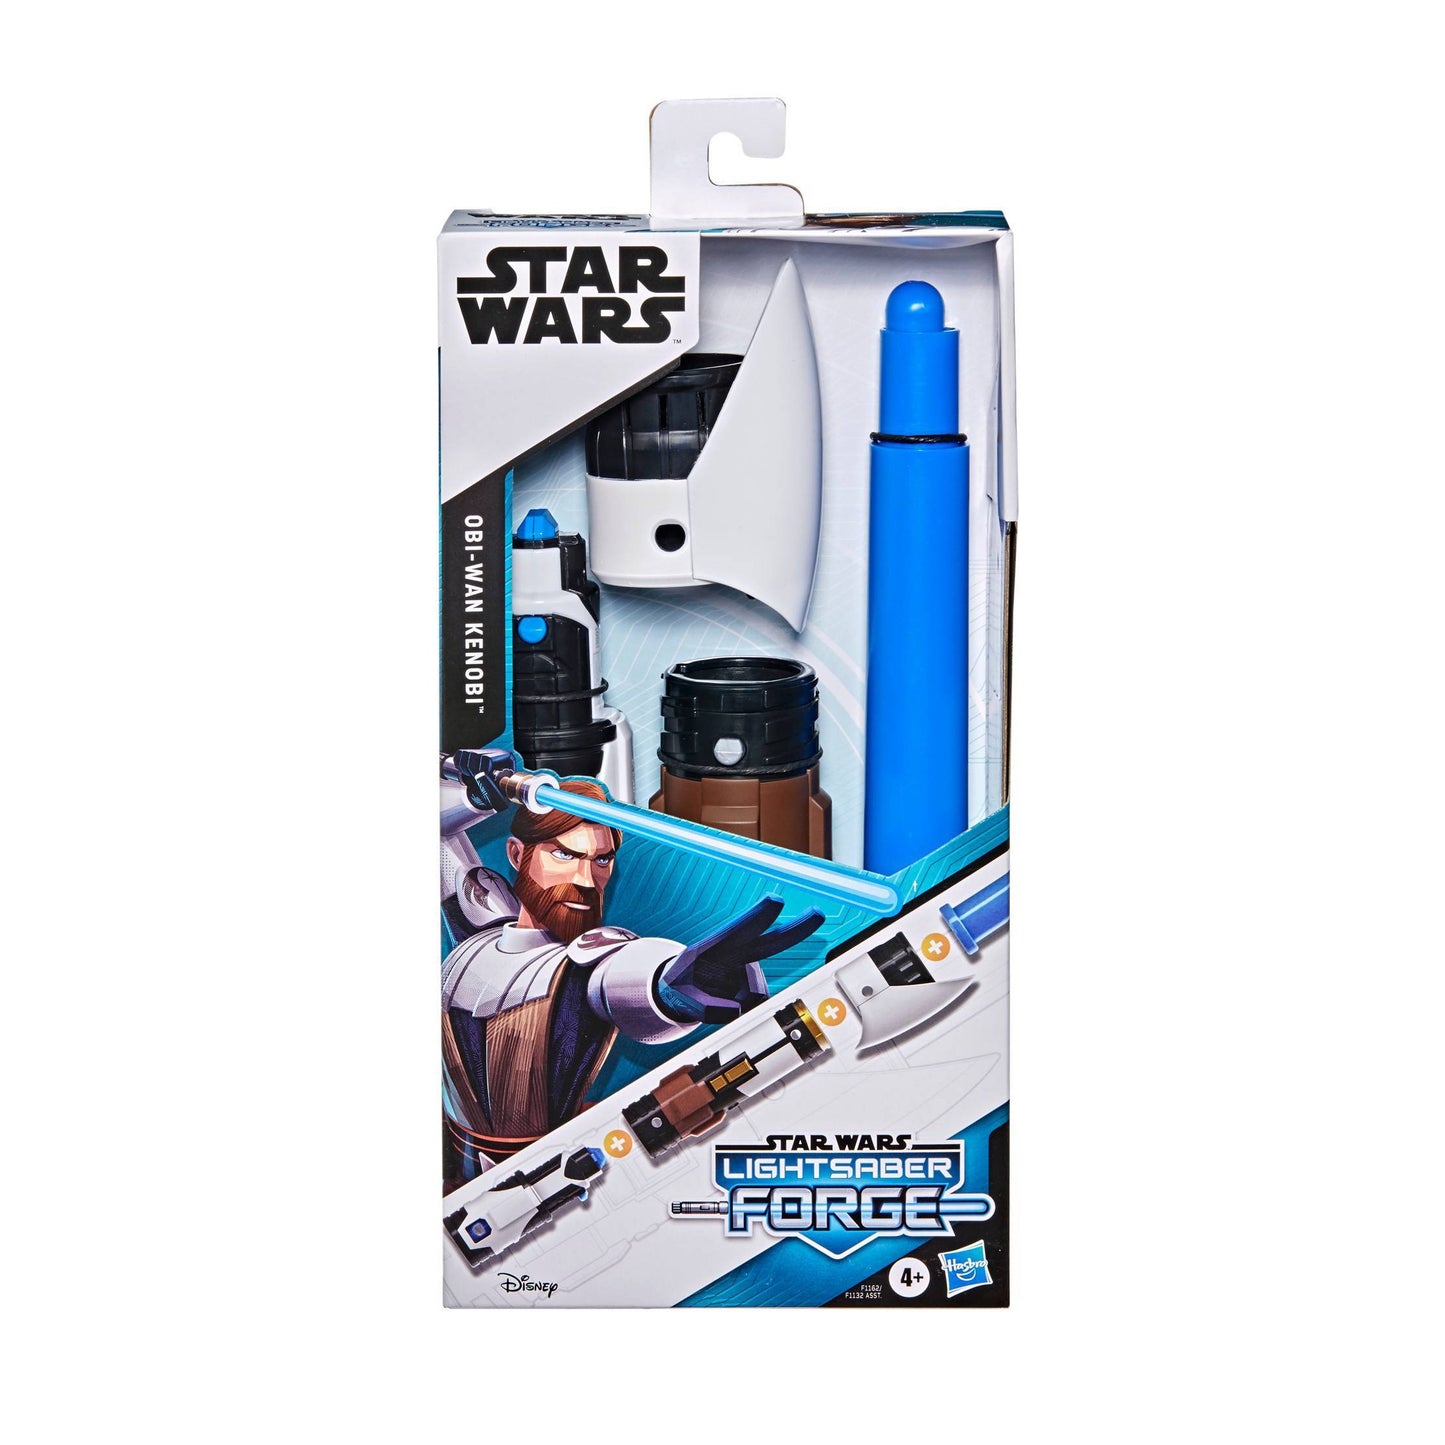 Star Wars Lightsaber Forge: Obi-Wan Kenobi Blue Saber